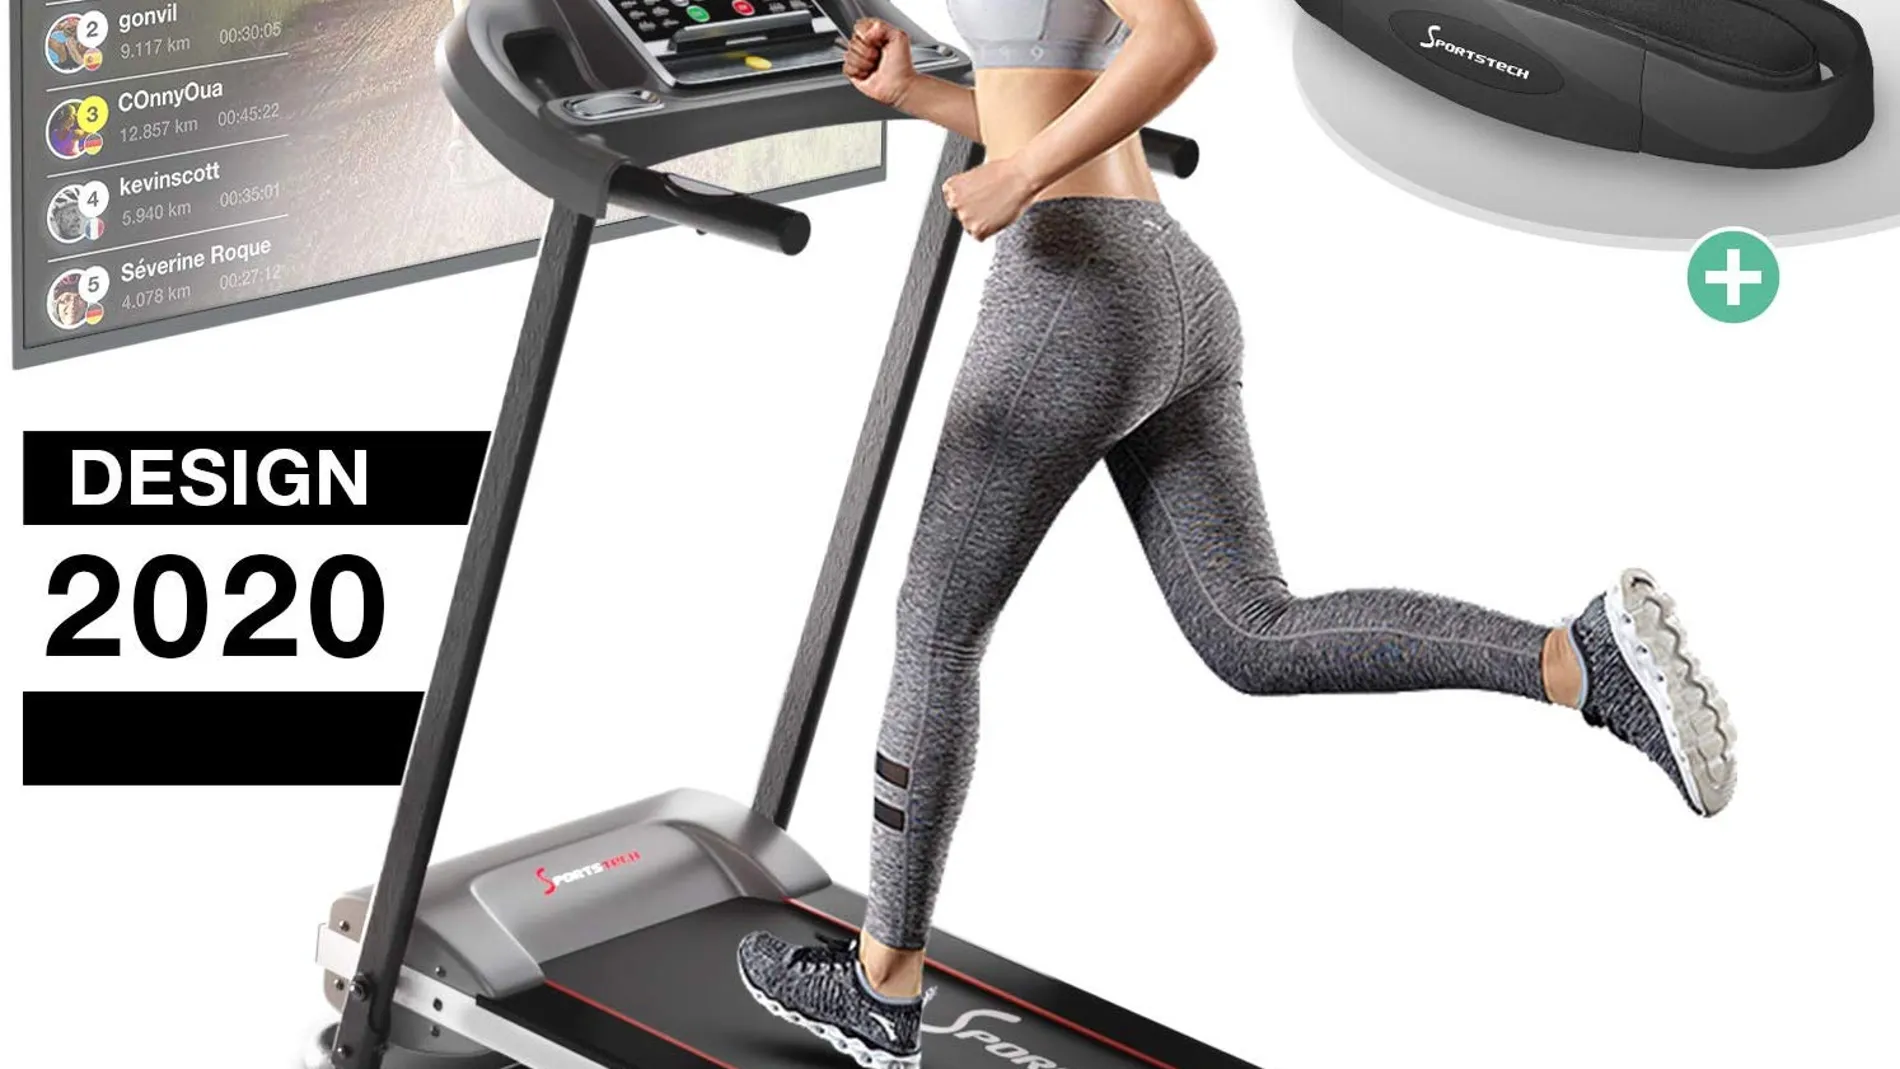 Las cintas de correr REFLEX reducen el impacto articular en un 29% - Gym  Factory Revista